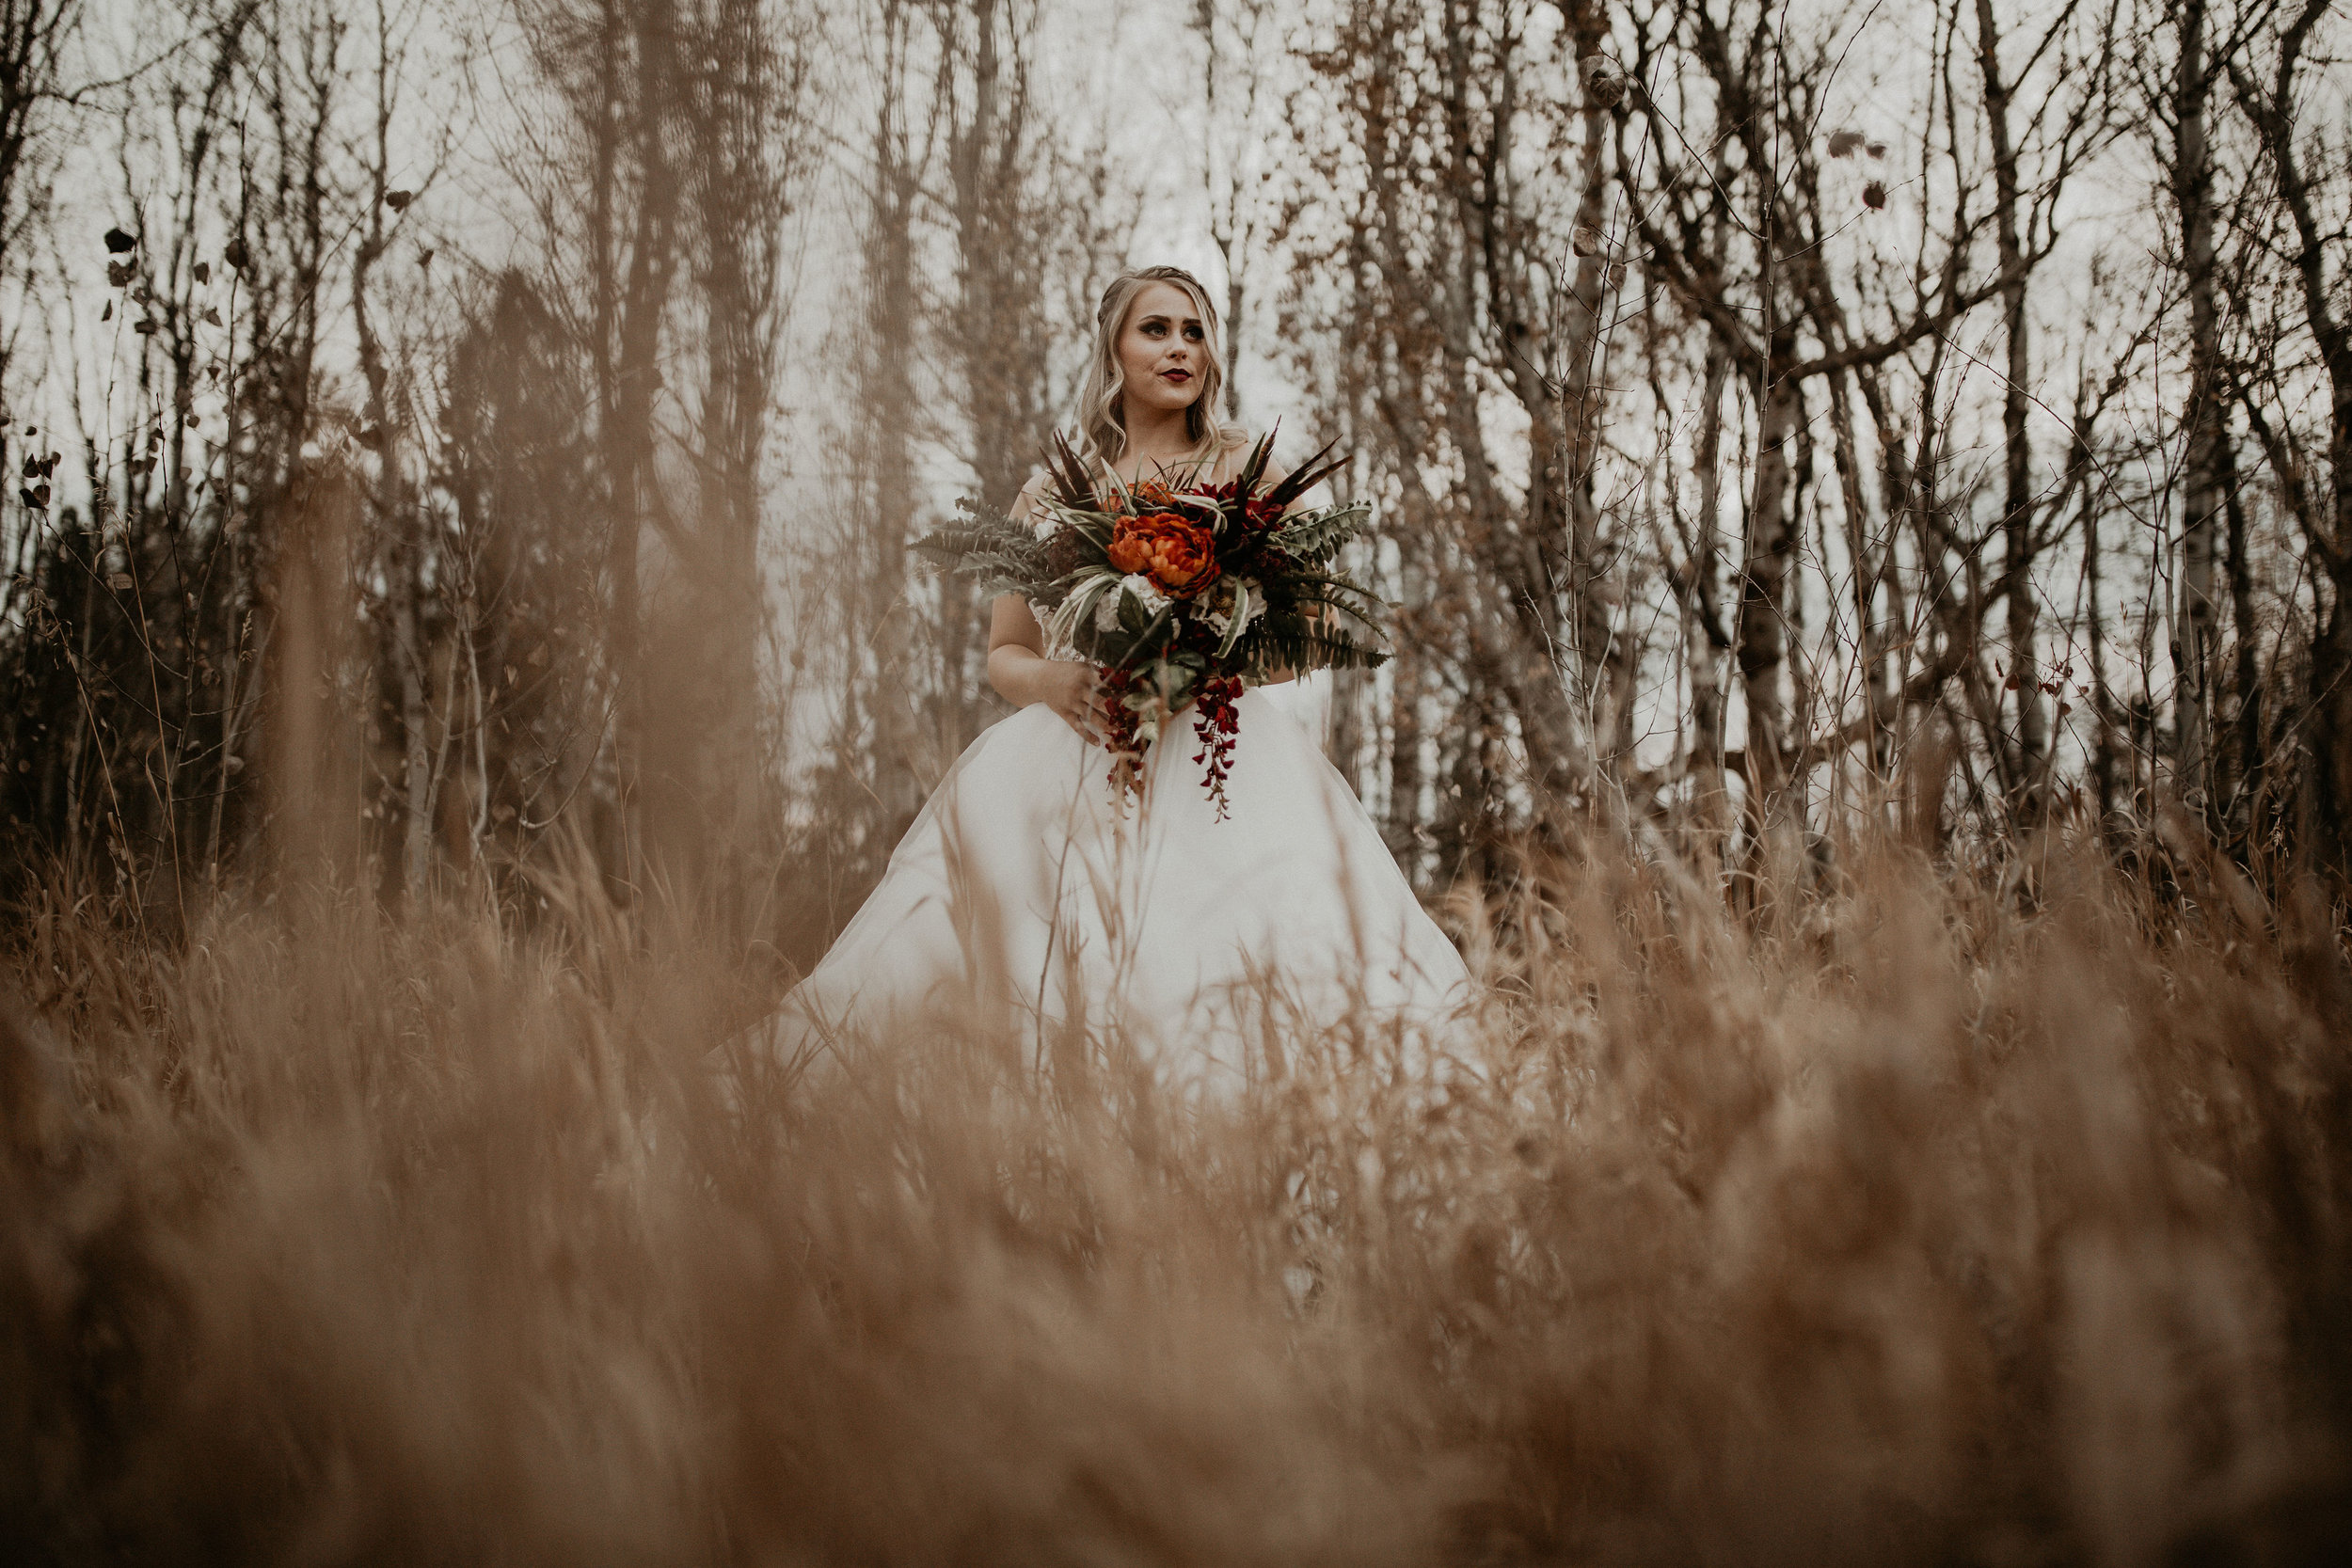 Spokane Fall wedding dress image in a field